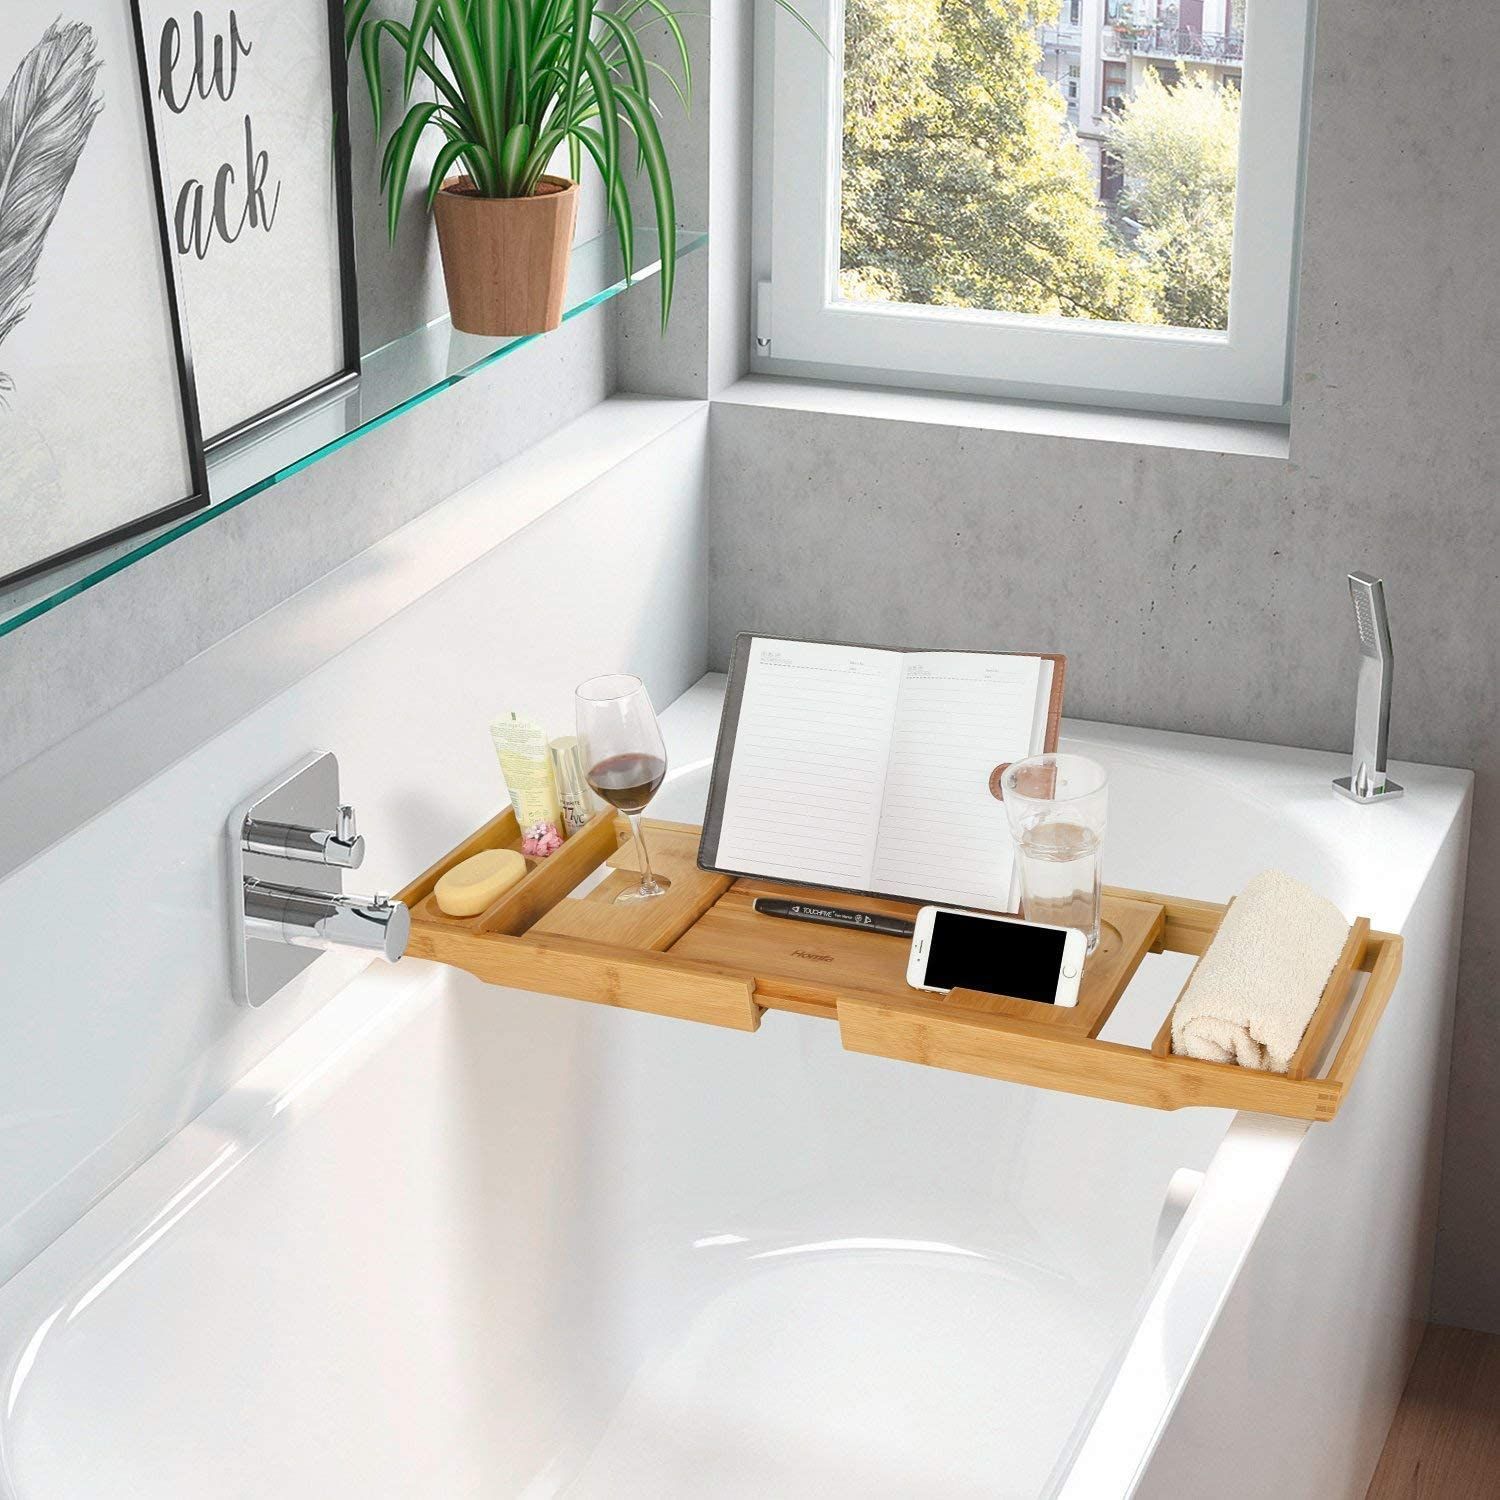 soporte para jabón bandeja para baño con diseño de Pagina bandeja para bañera Simhoo Bandeja para bañera de bambú extensible con 2 cajas para toallas bandeja para bañera 